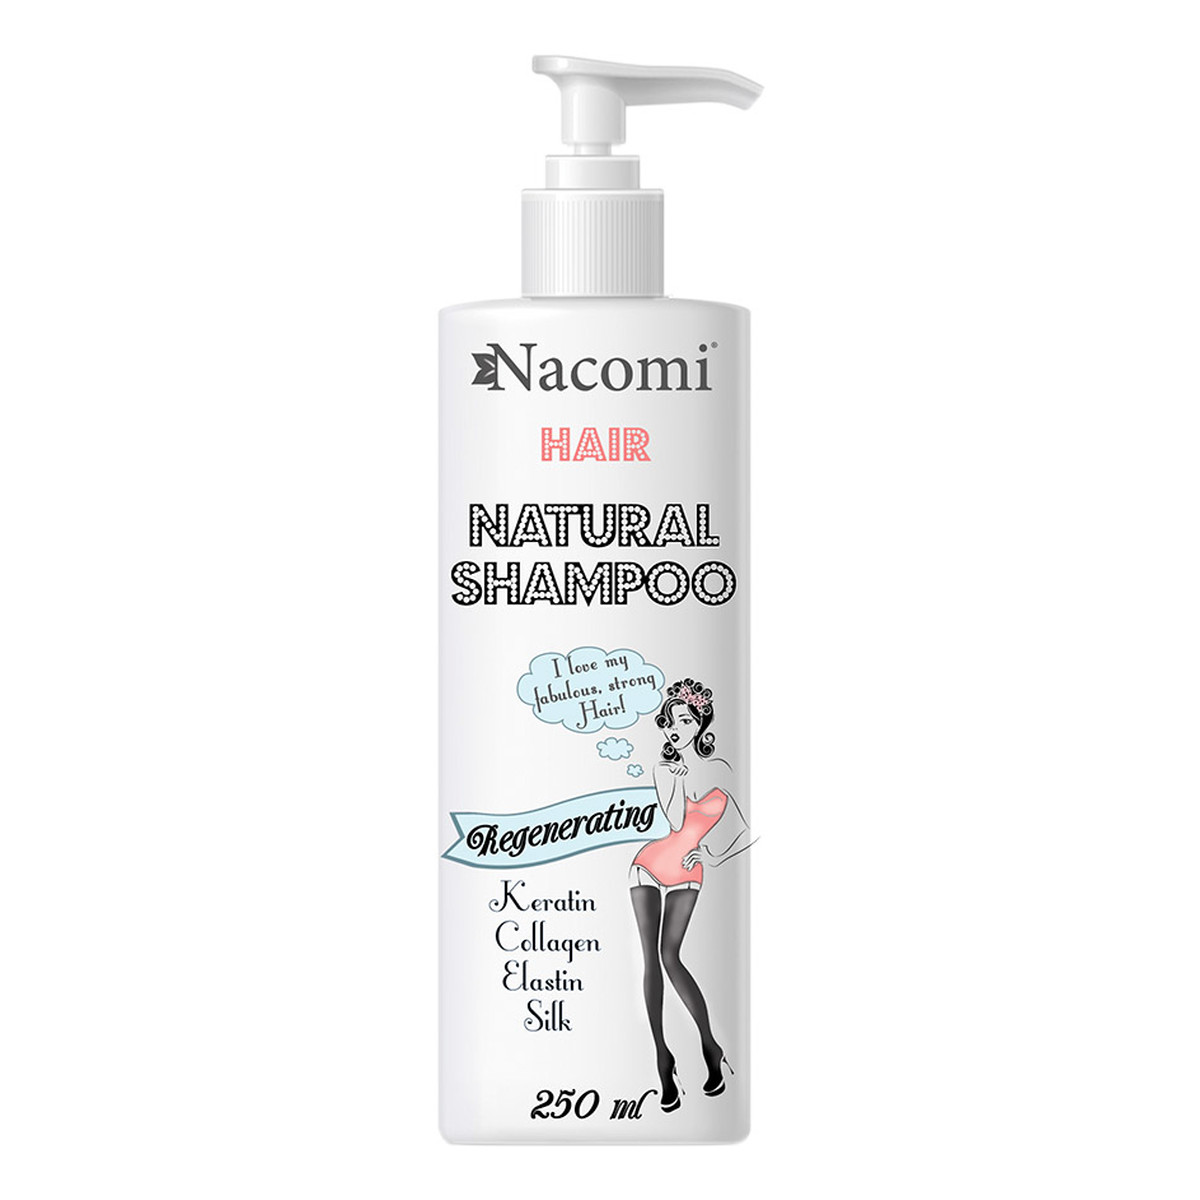 Nacomi odżywczo-regenerujący szampon do włosów 250ml